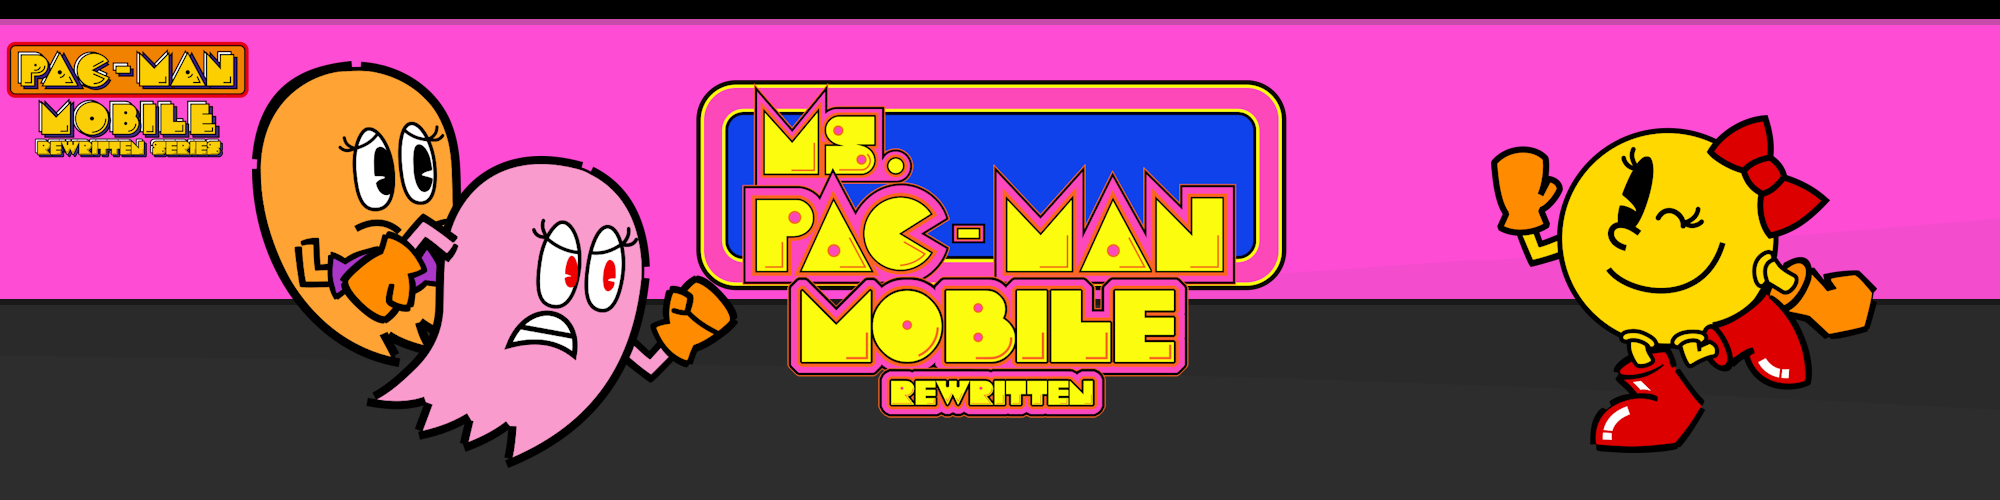 Ms. Pac-Man Mobile: Rewritten (Pac-Man Mobile Rewritten Series)